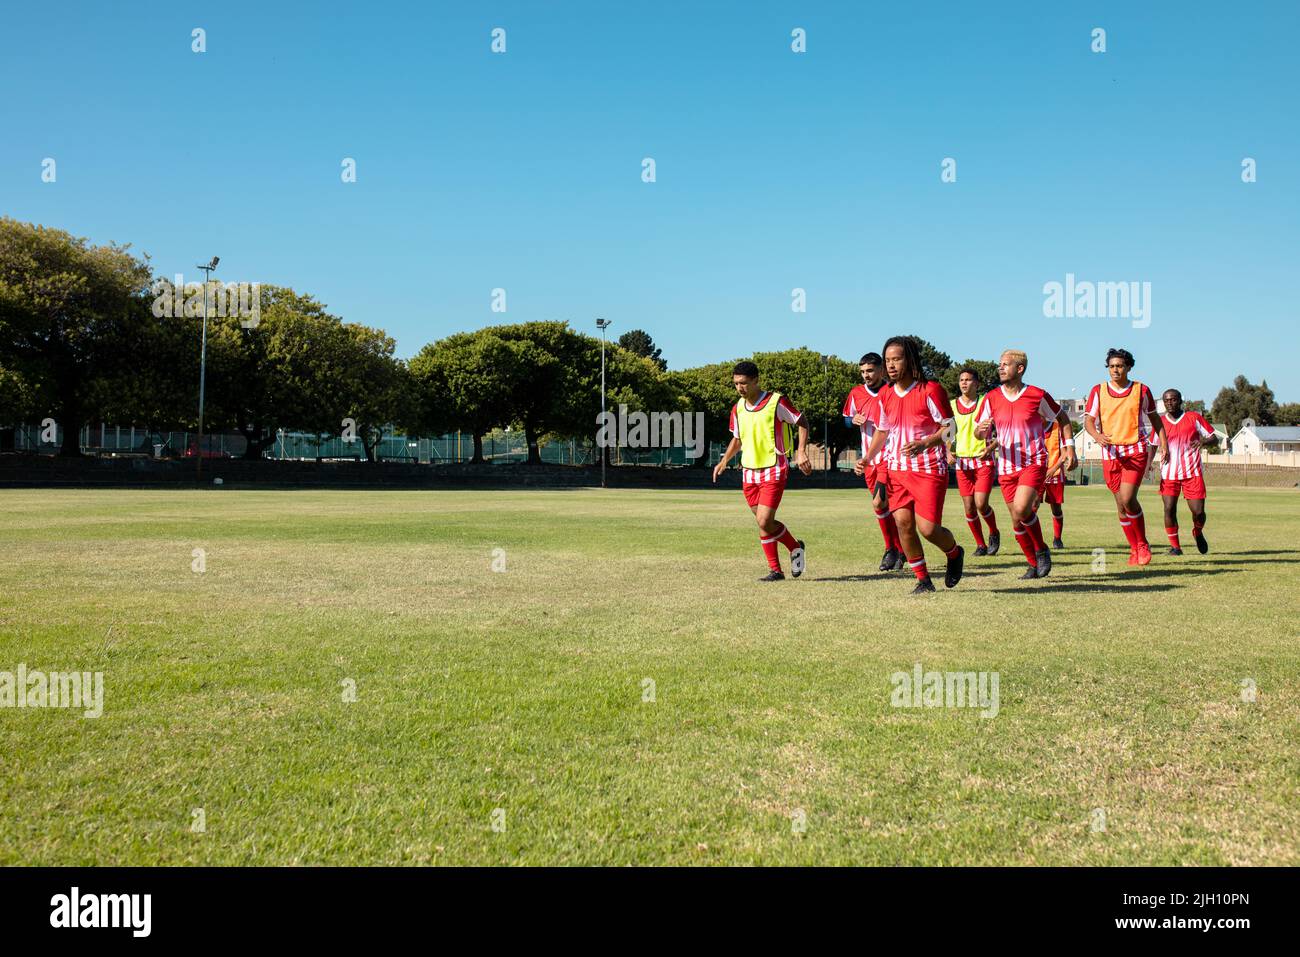 Squadra di calcio maschile multirazziale che indossa uniformi rosse che corrono su terra erbosa contro il cielo limpido Foto Stock